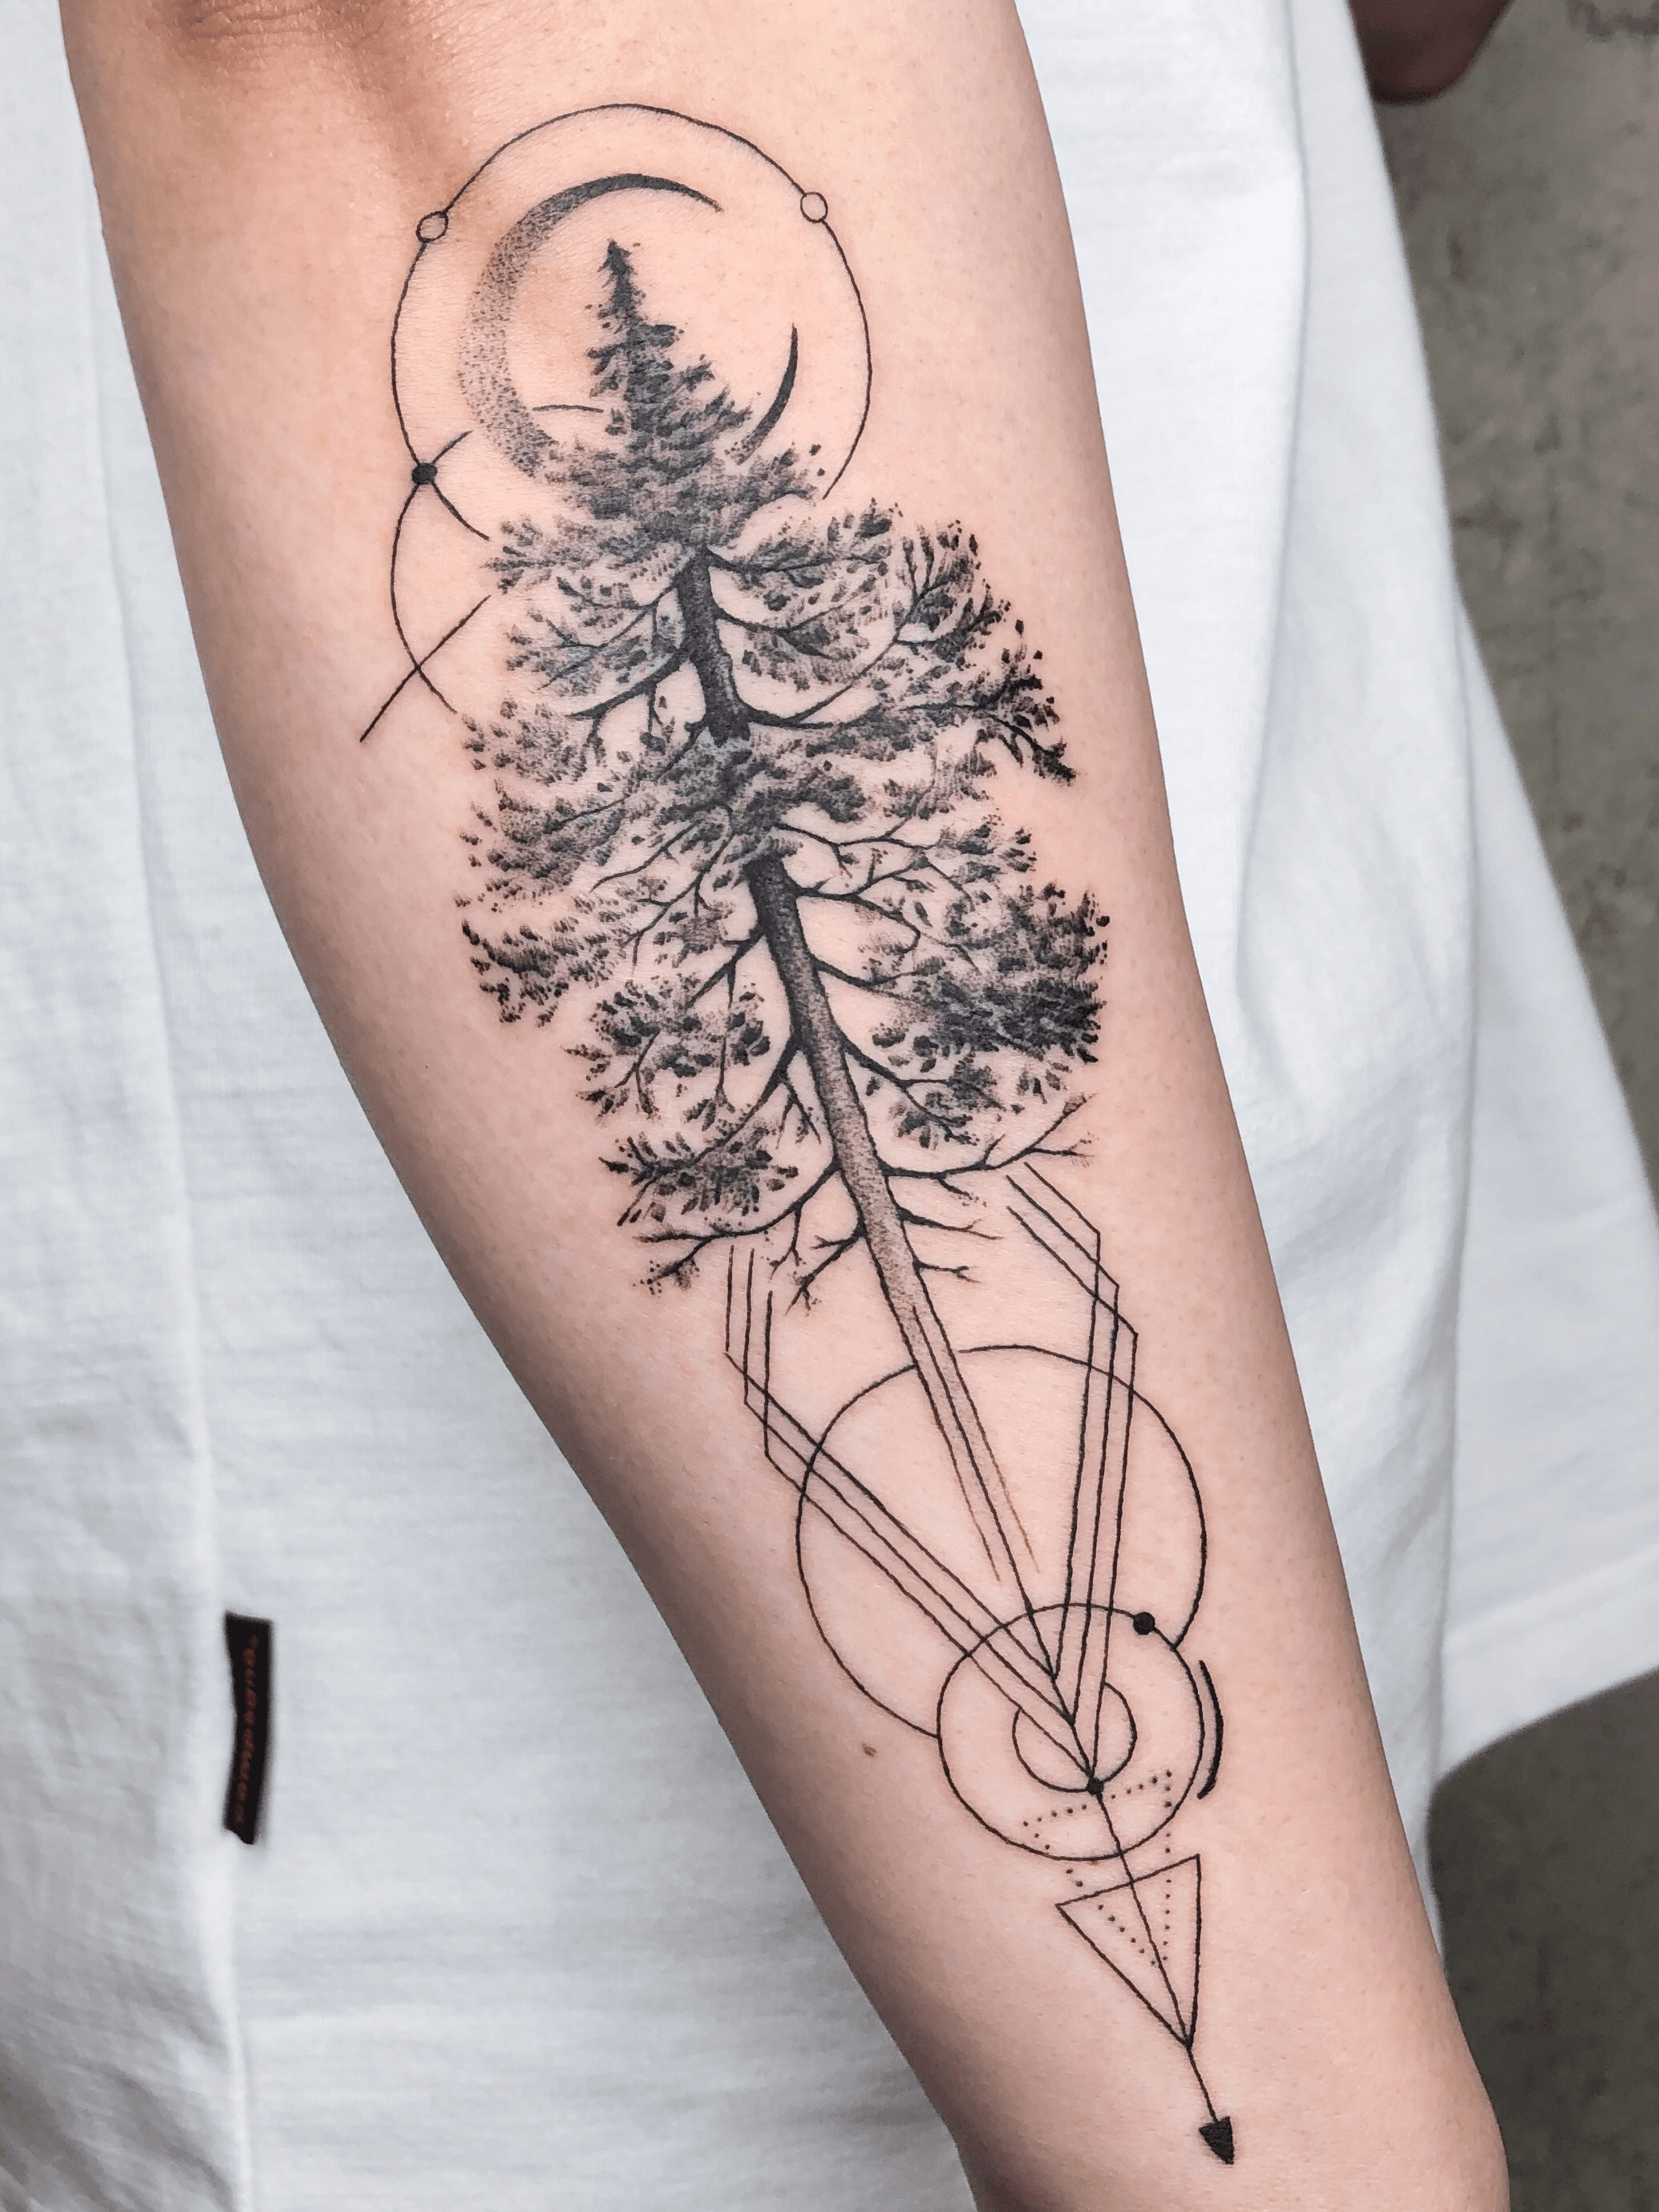 10 Best evergreen tree tattoo ideas  tree tattoo evergreen tree tattoo  pine tree tattoo